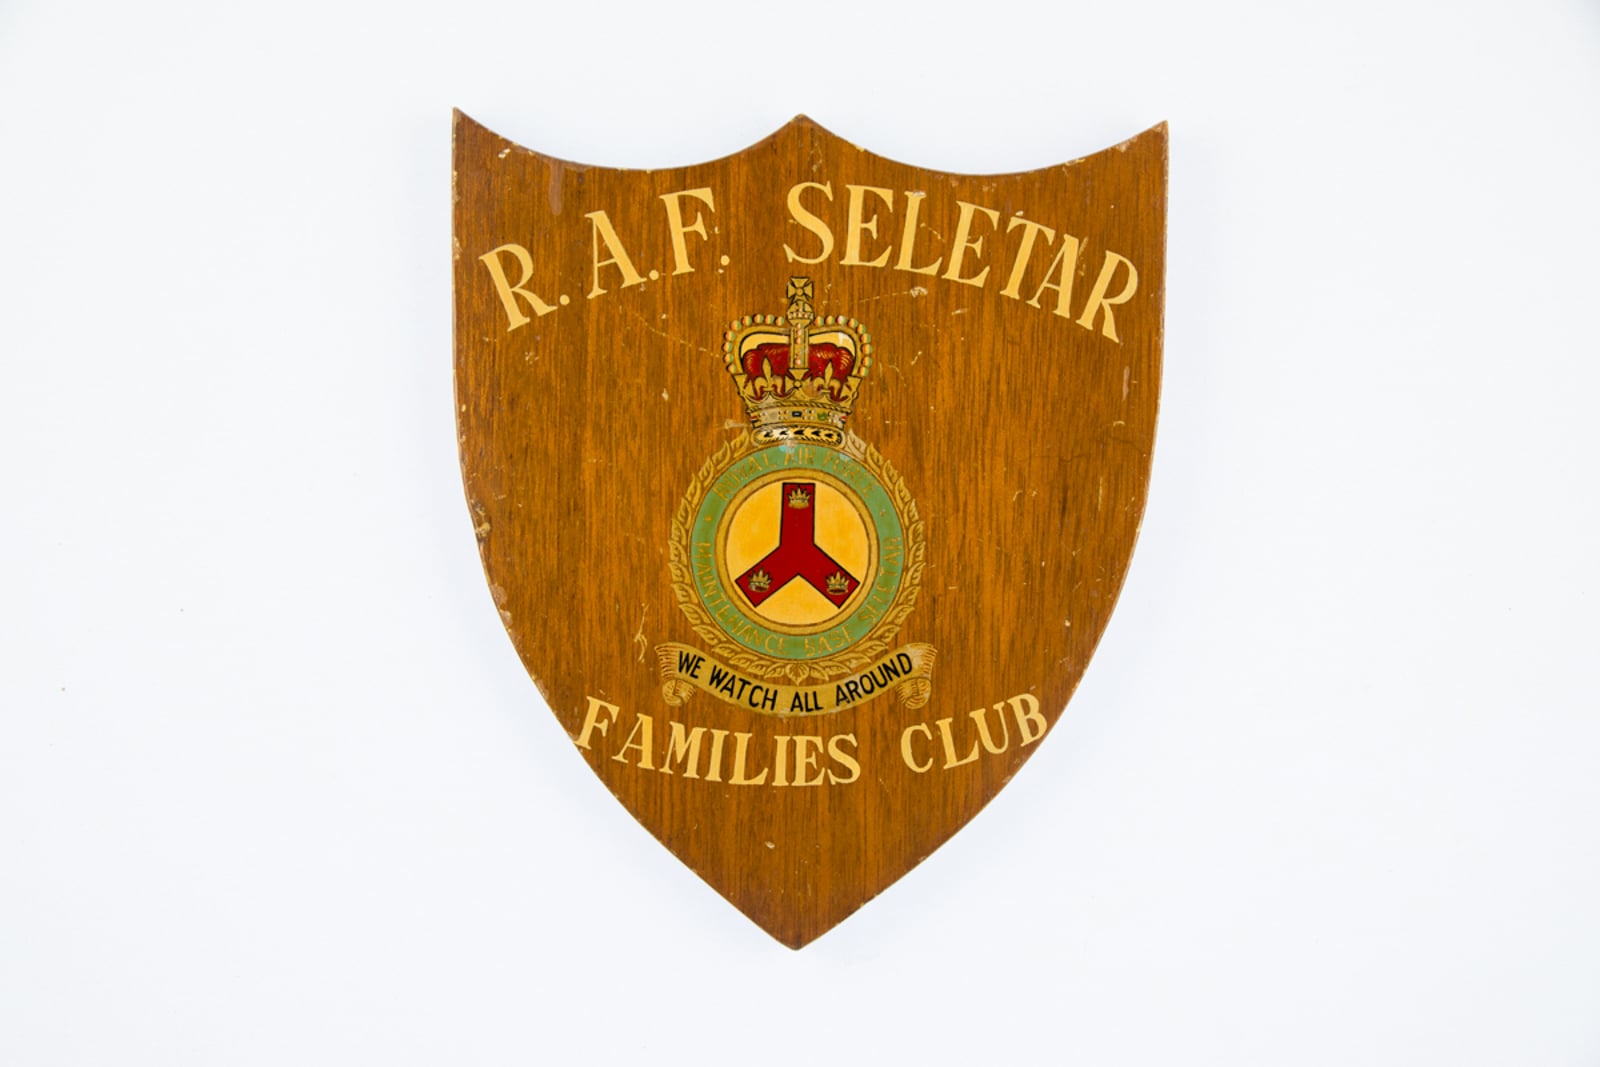 RAF Seletar Families Club Plaque